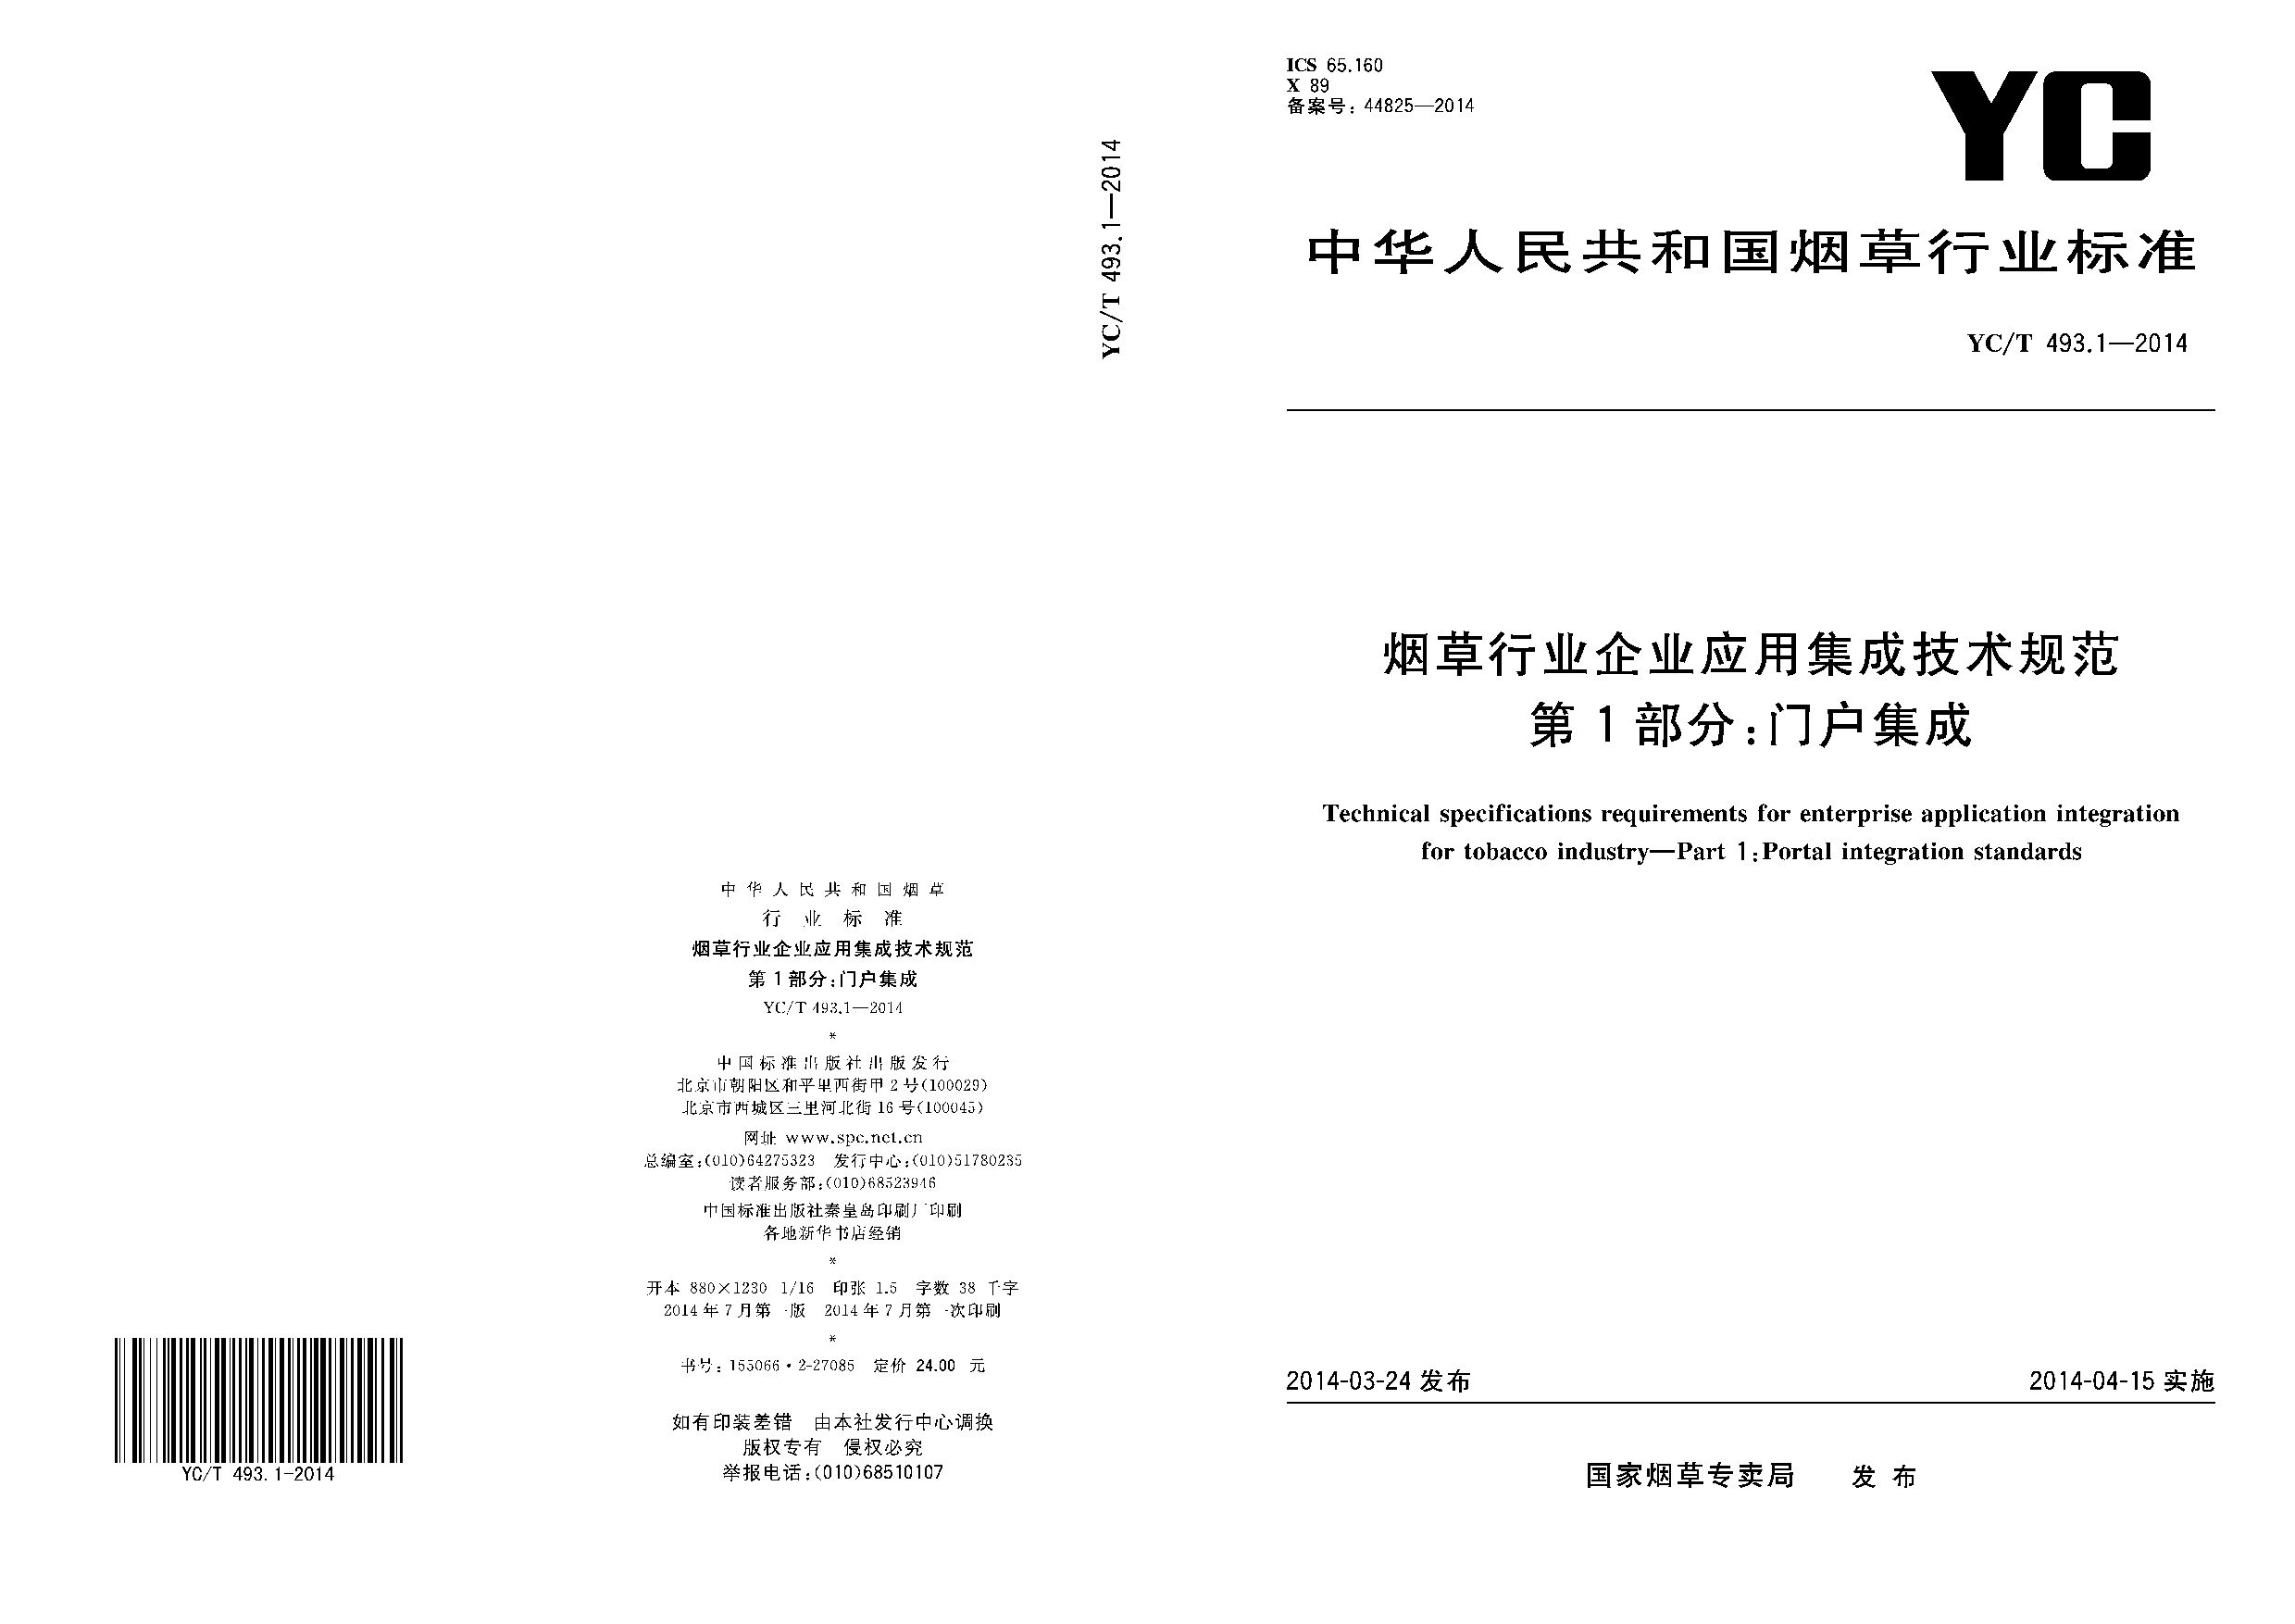 YC/T 493.1-2014